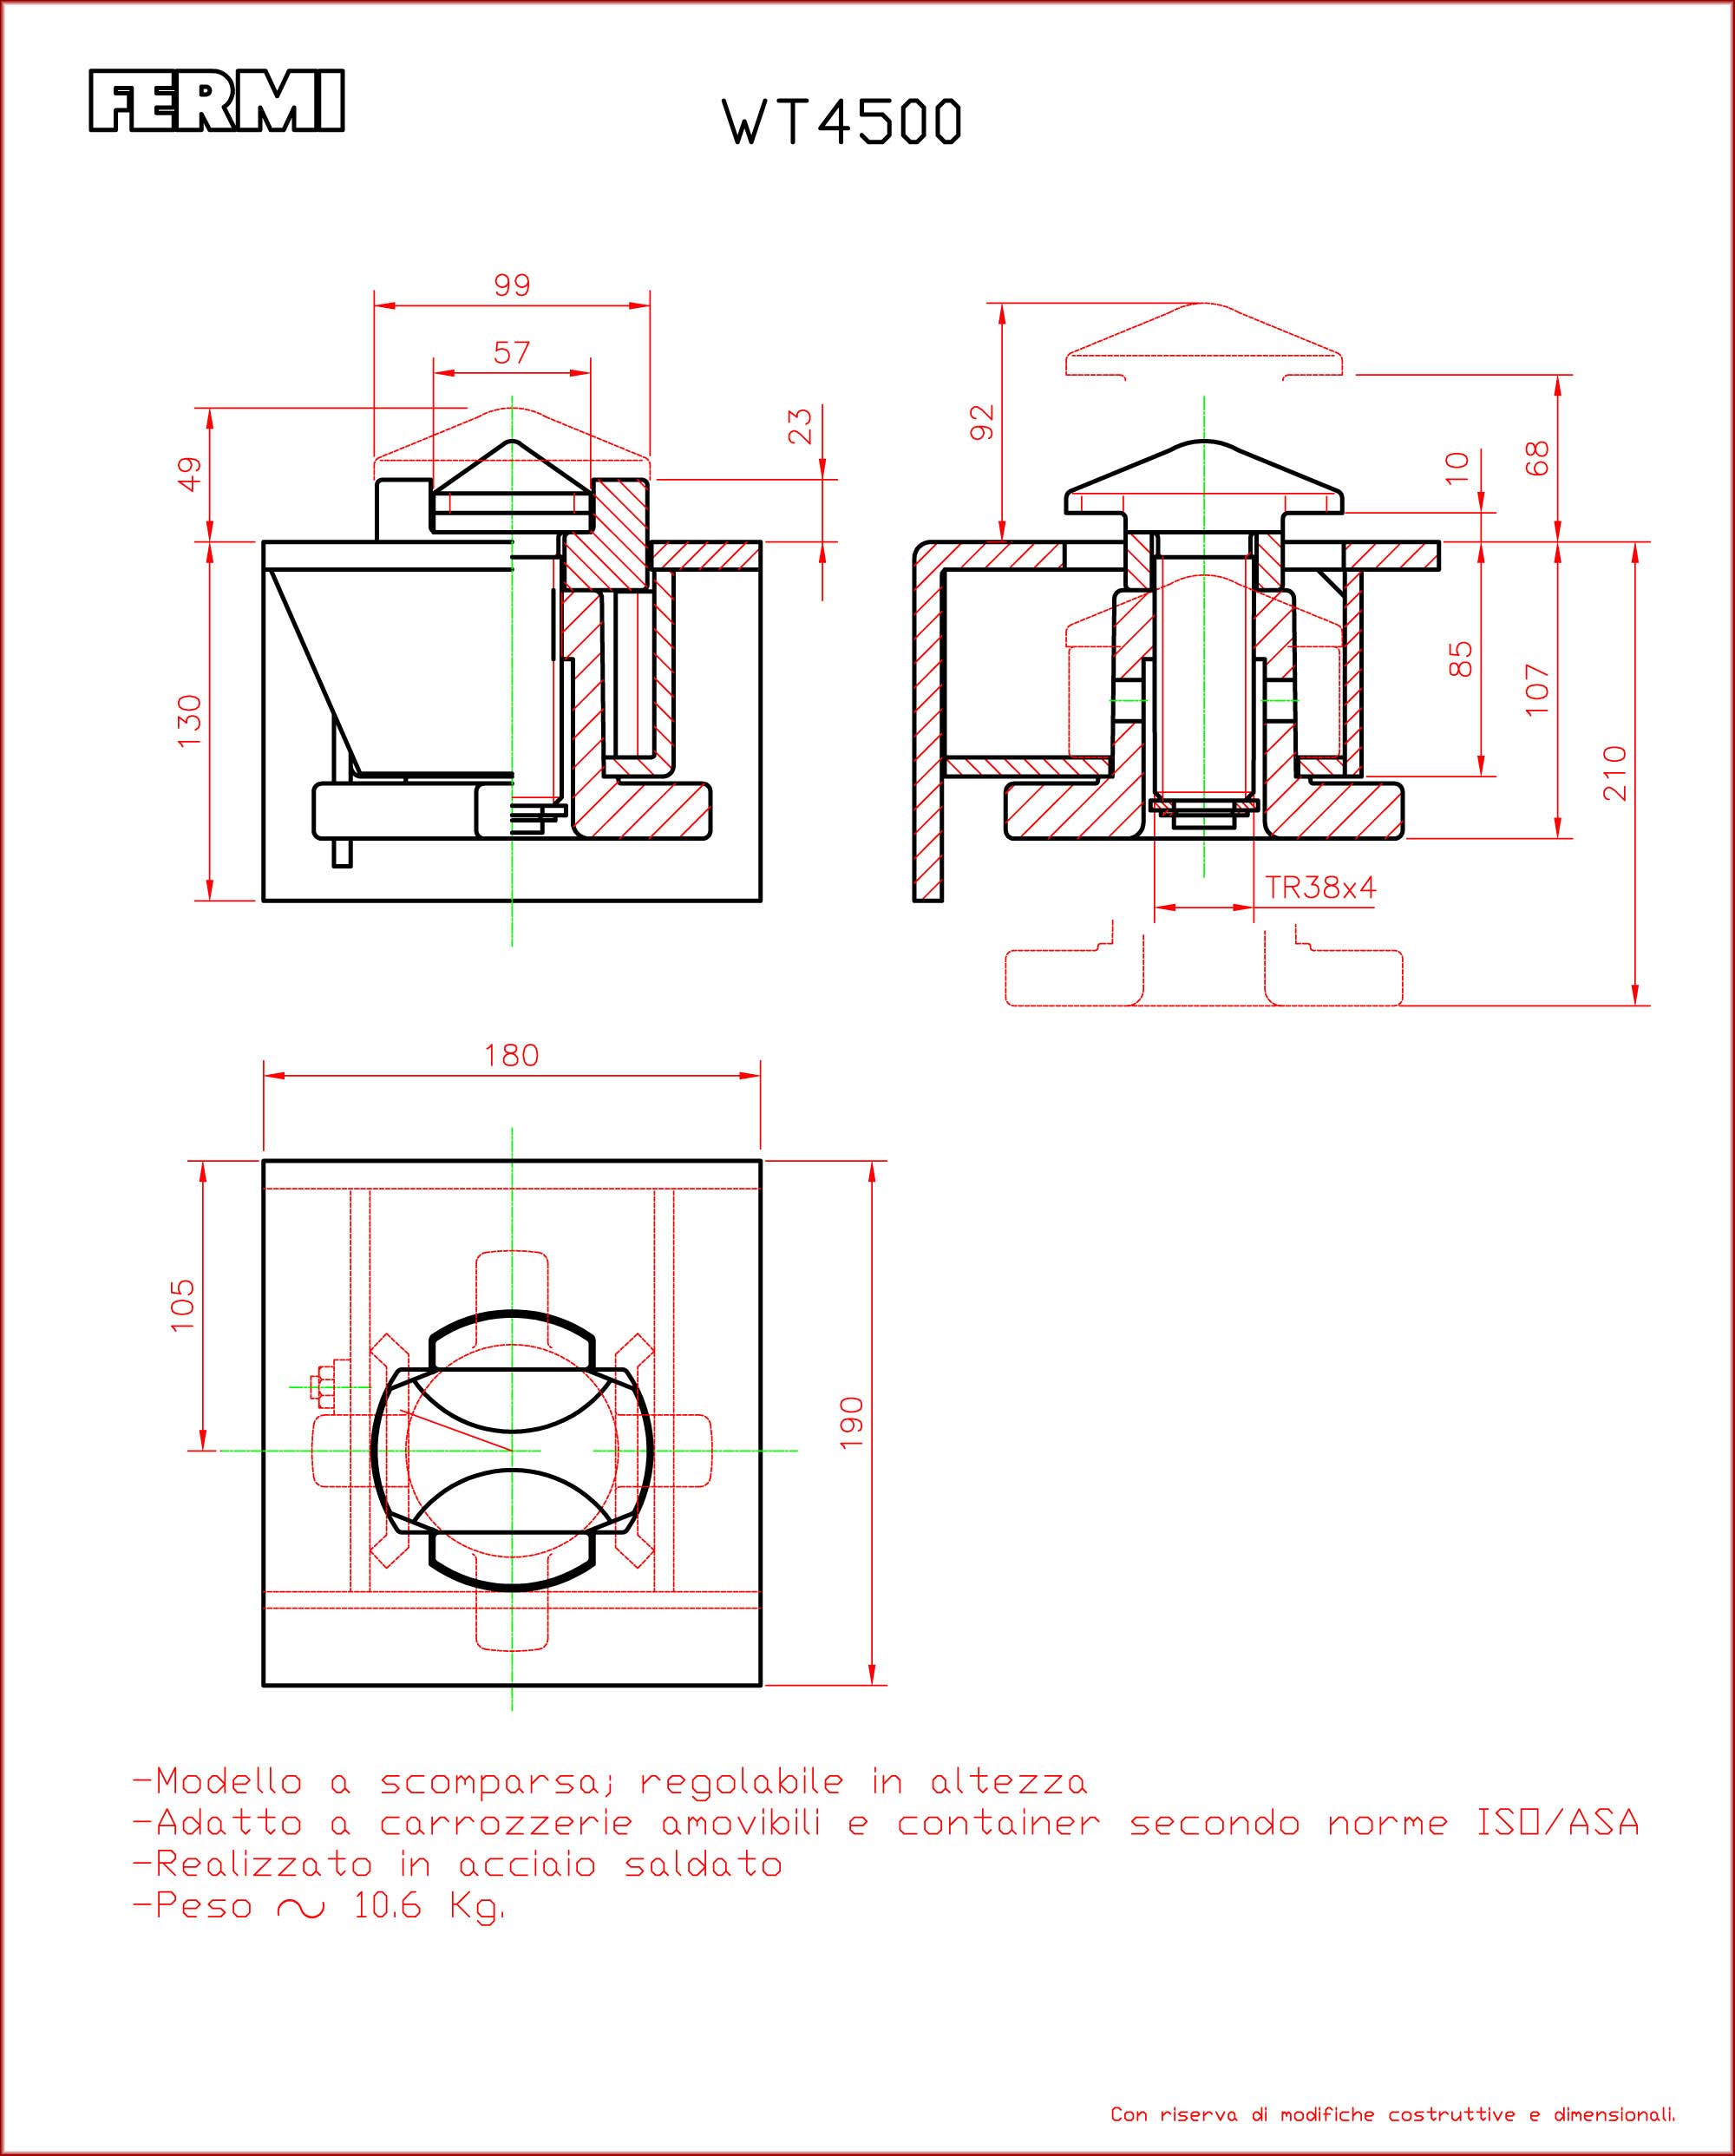 Blocca_Containers-Twist_Locks_WM-4500-Fermi-Treviso